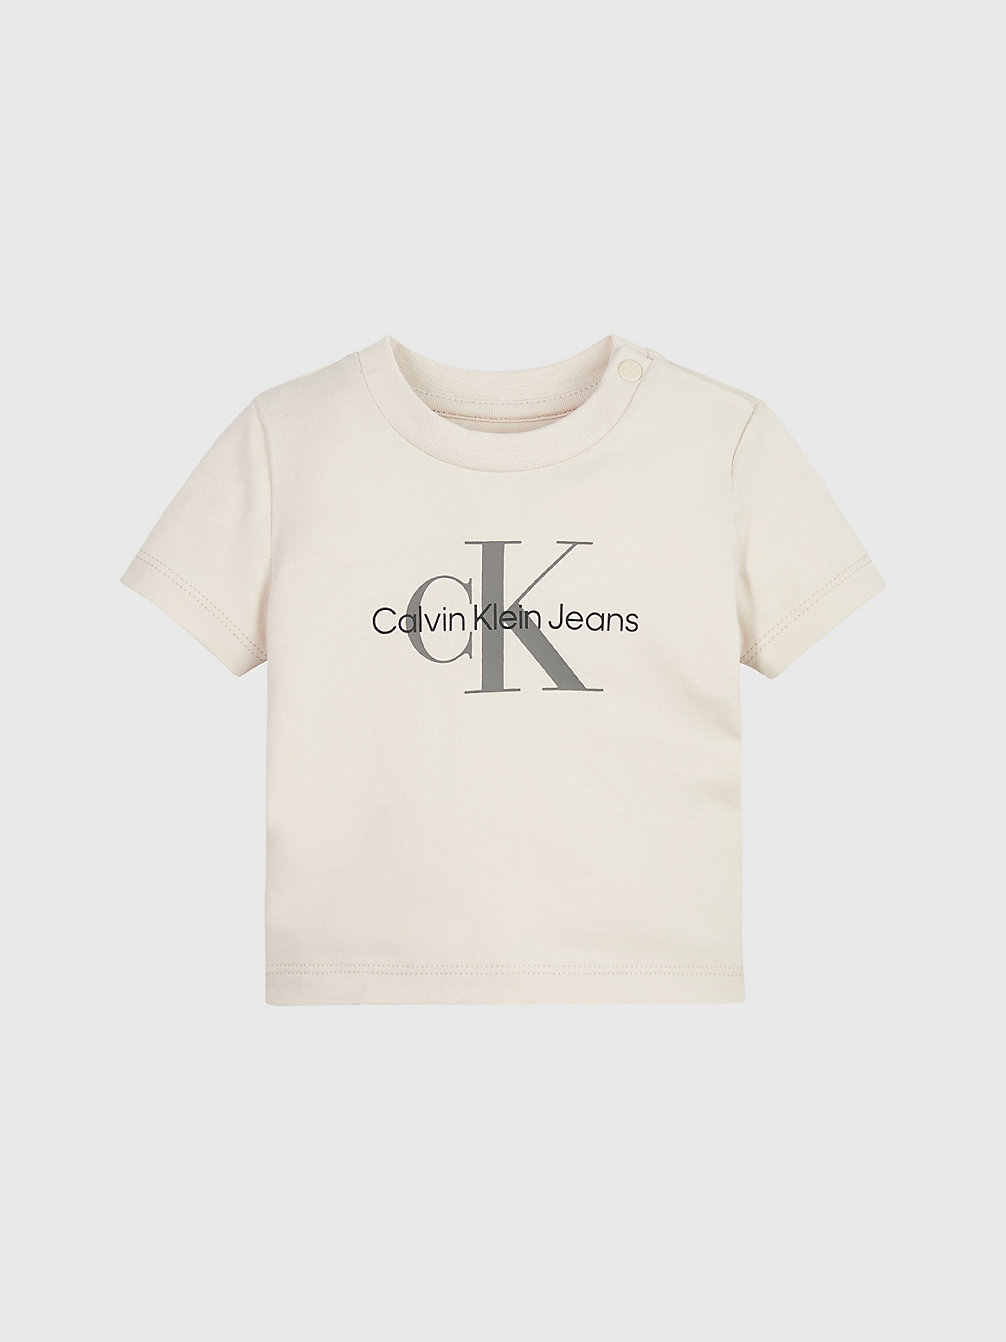 WHITECAP GRAY T-Shirt Pour Nouveau-Né Avec Logo undefined newborn Calvin Klein